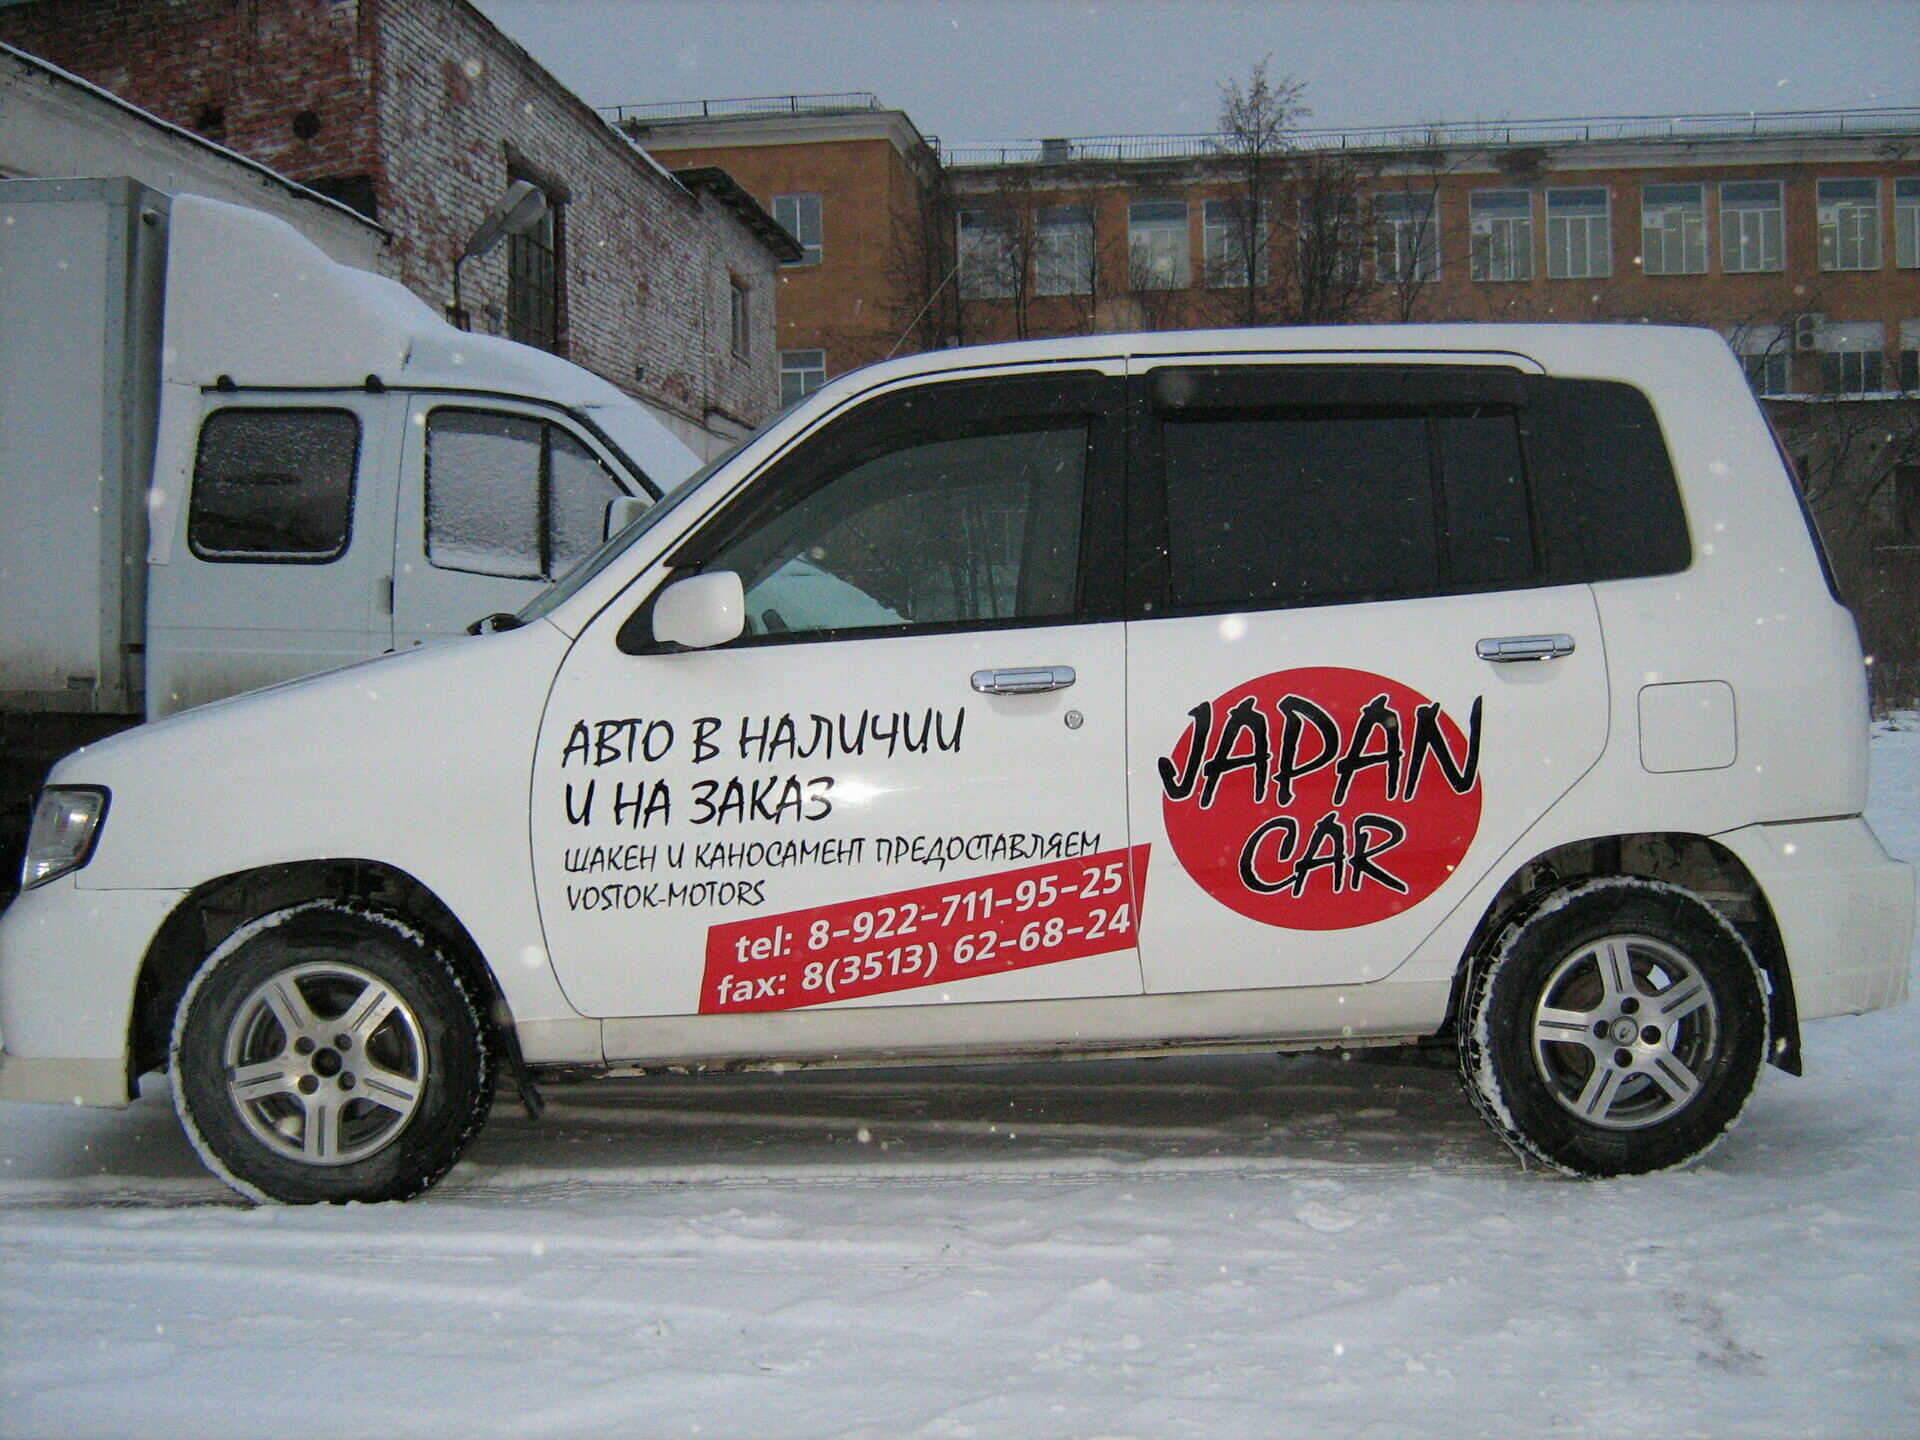 Japan Car